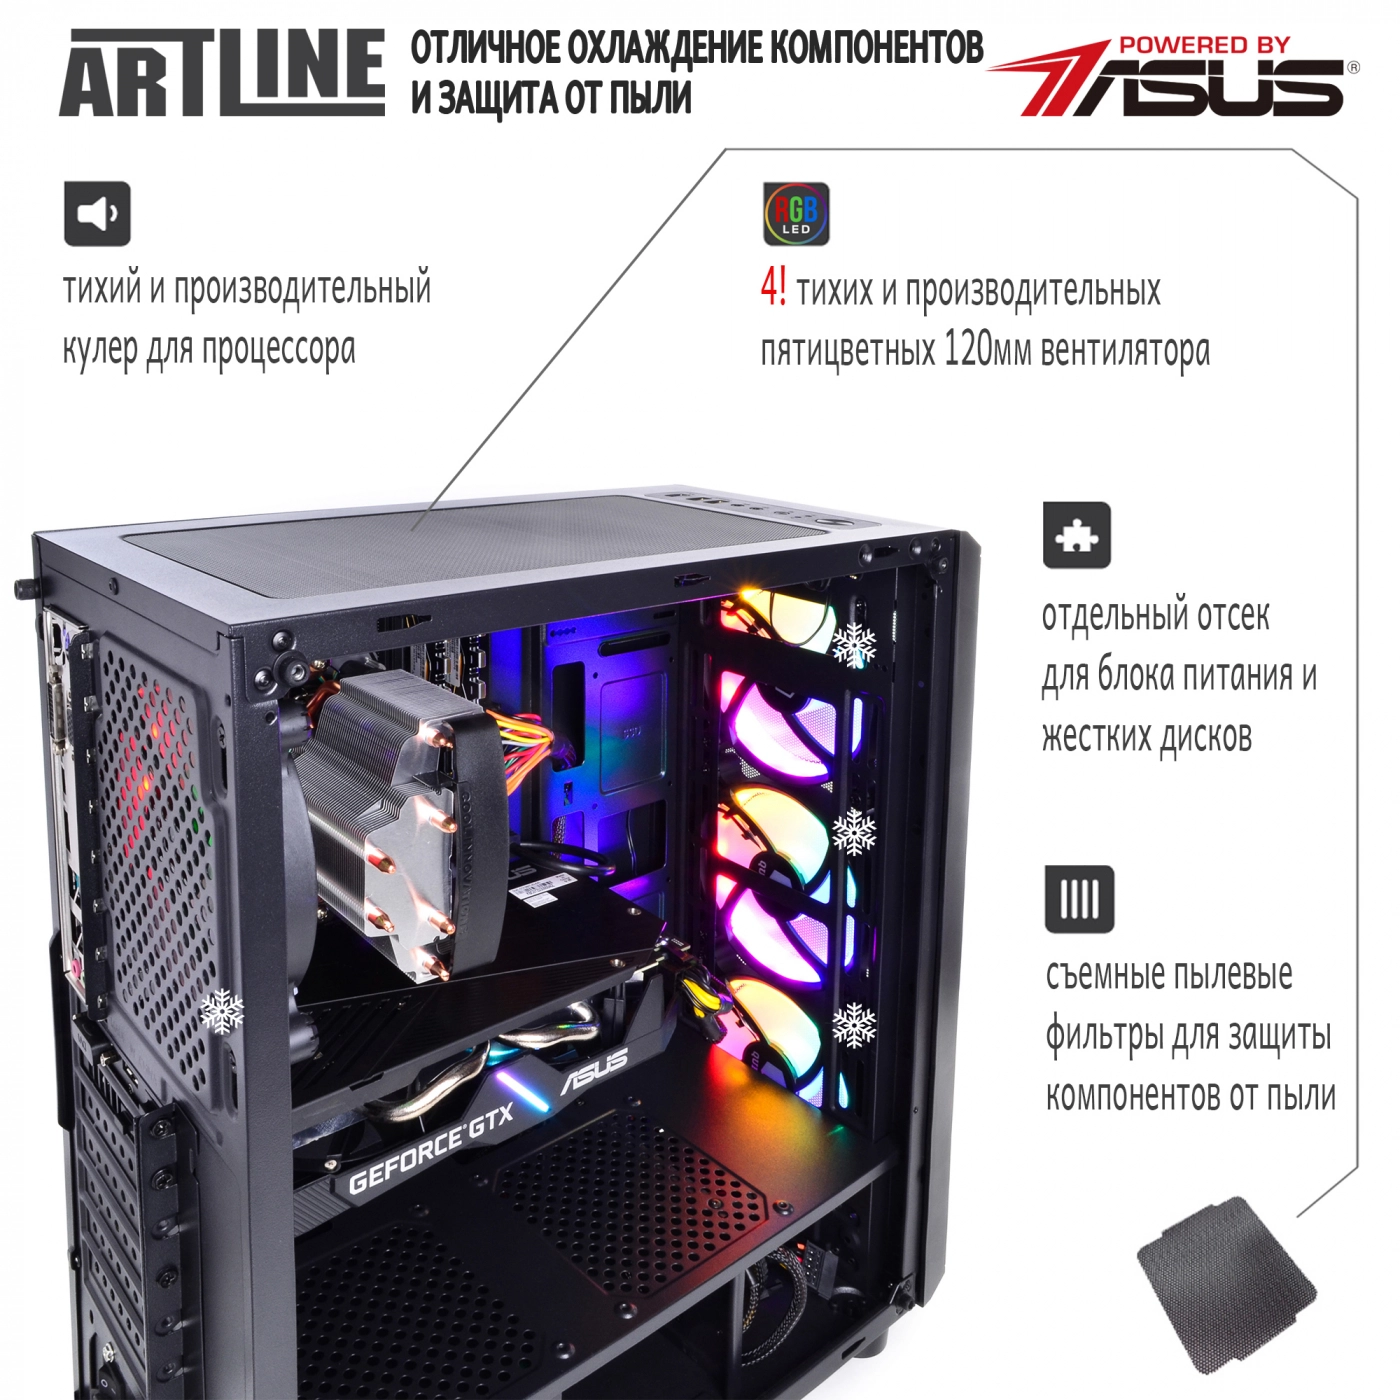 Купить Компьютер ARTLINE Gaming X68v08 - фото 3